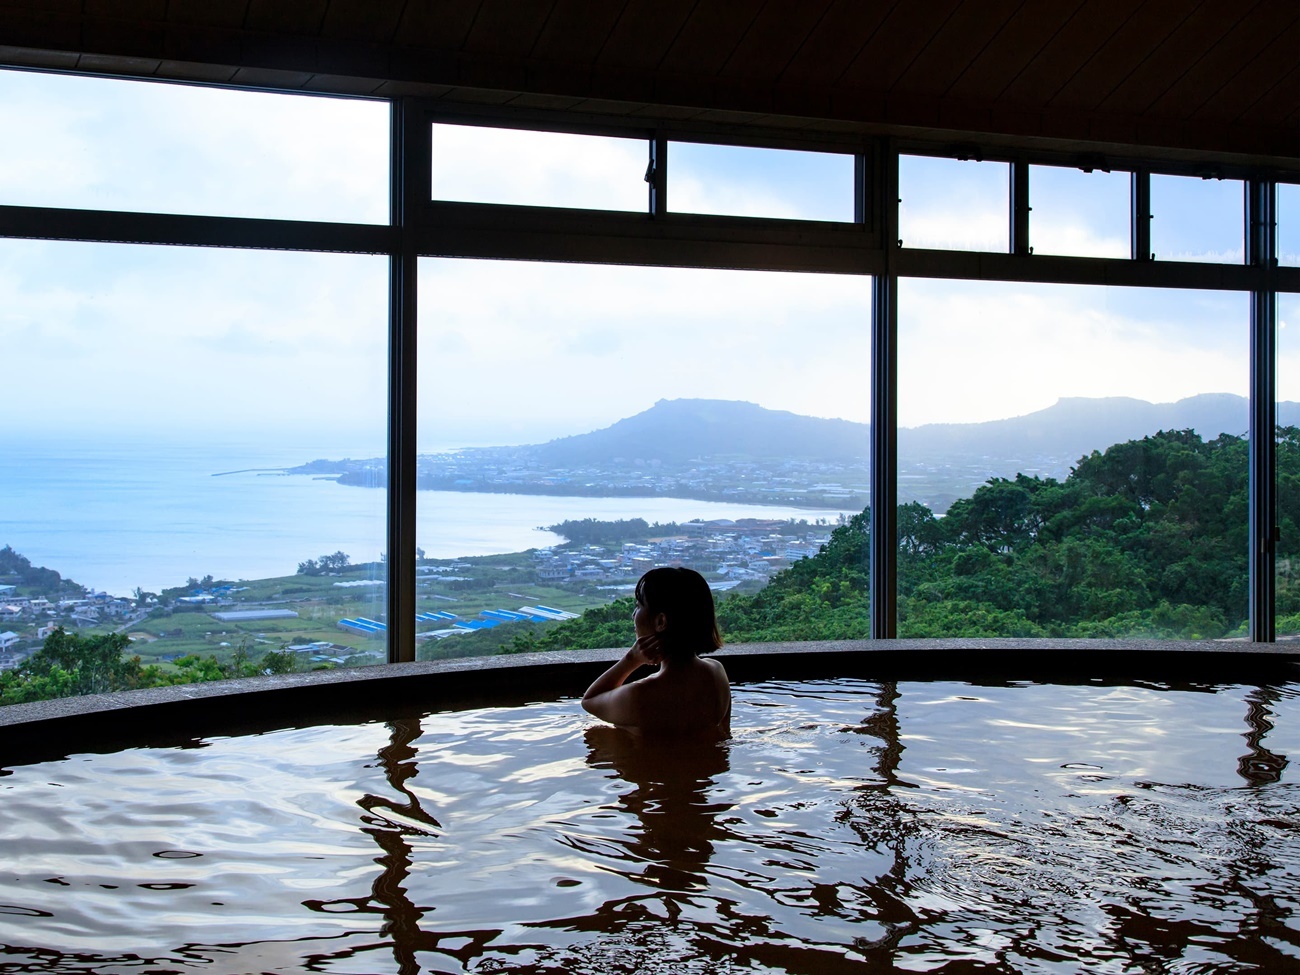 展望風呂は抜群の眺望で太平洋の絶景をお愉しみいただけます